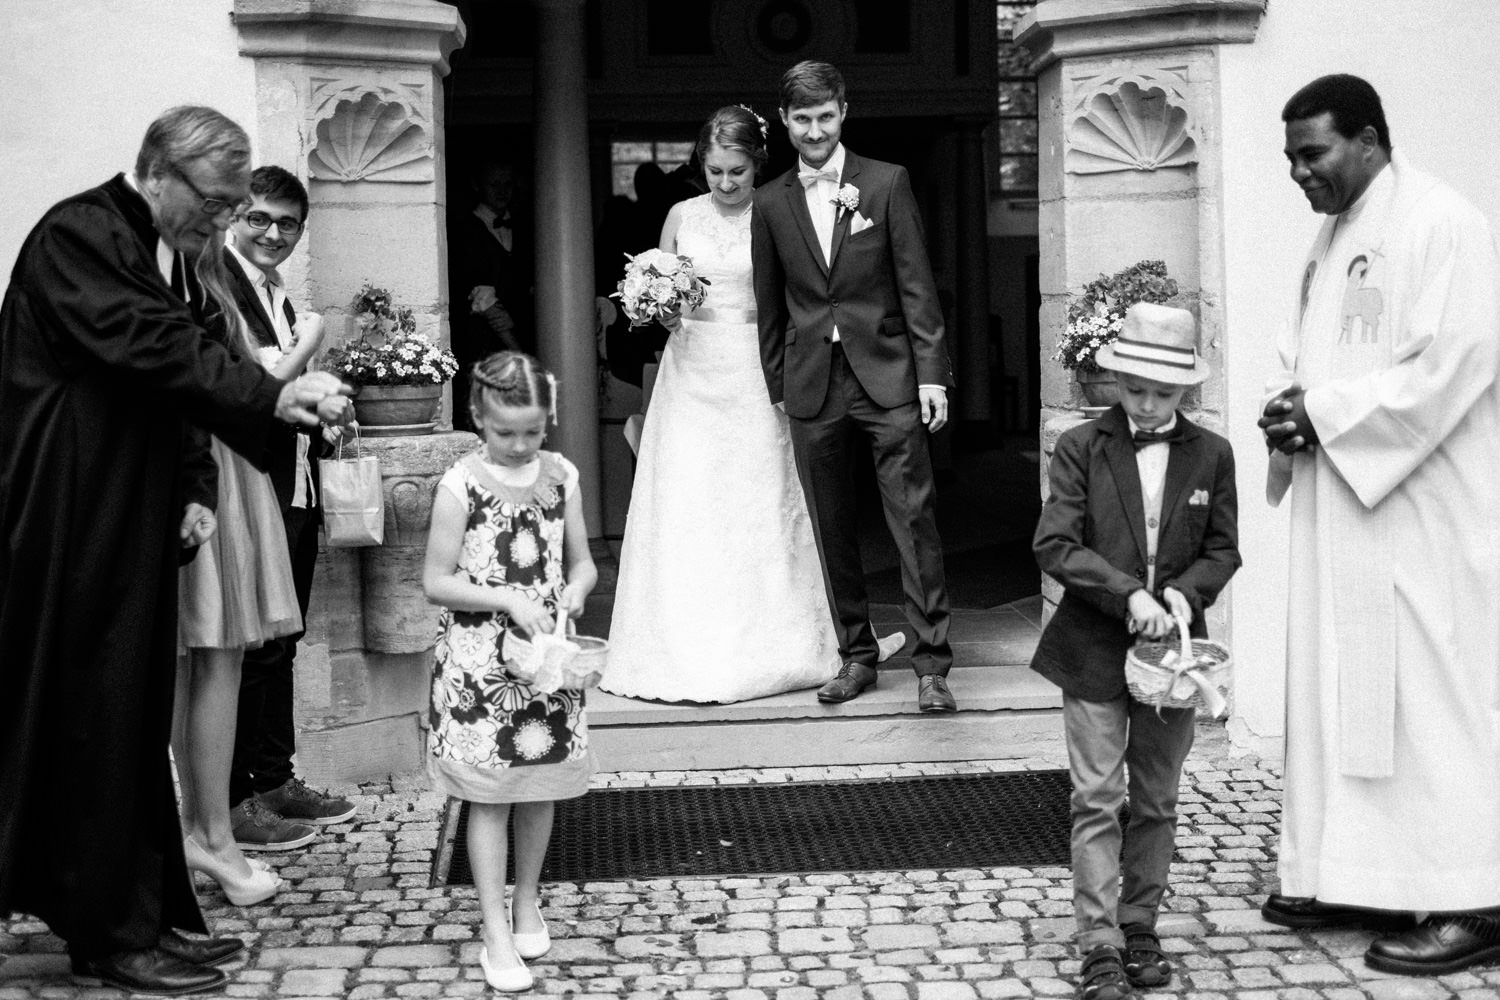 Zelthochzeit-Inspiration-Hochzeitsreportage-natürlich-Hessenhof-Coburg-Oberfranken-Aachen-Hochzeitsfotograf-Kevin Biberbach-KEVIN Fotografie-Junebug-Hochzeitswahn-061.jpg